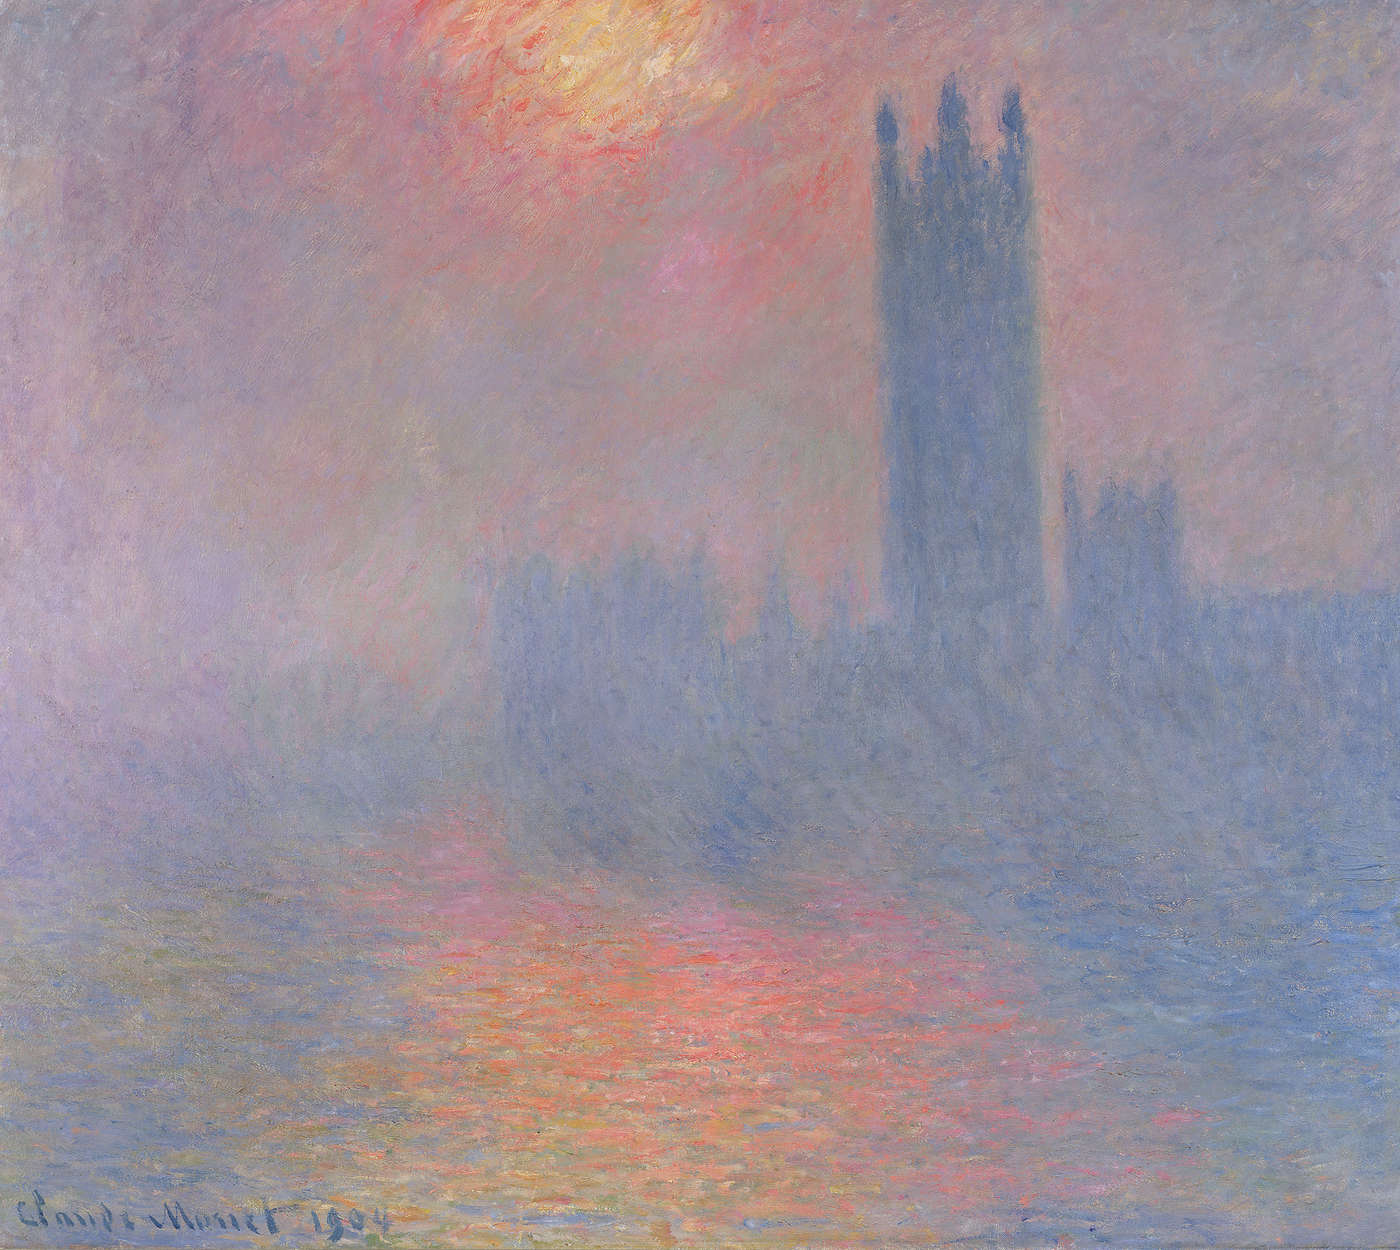             Muurschildering "Het parlement van Londen met de zon die door de mist breekt" door Claude Monet
        